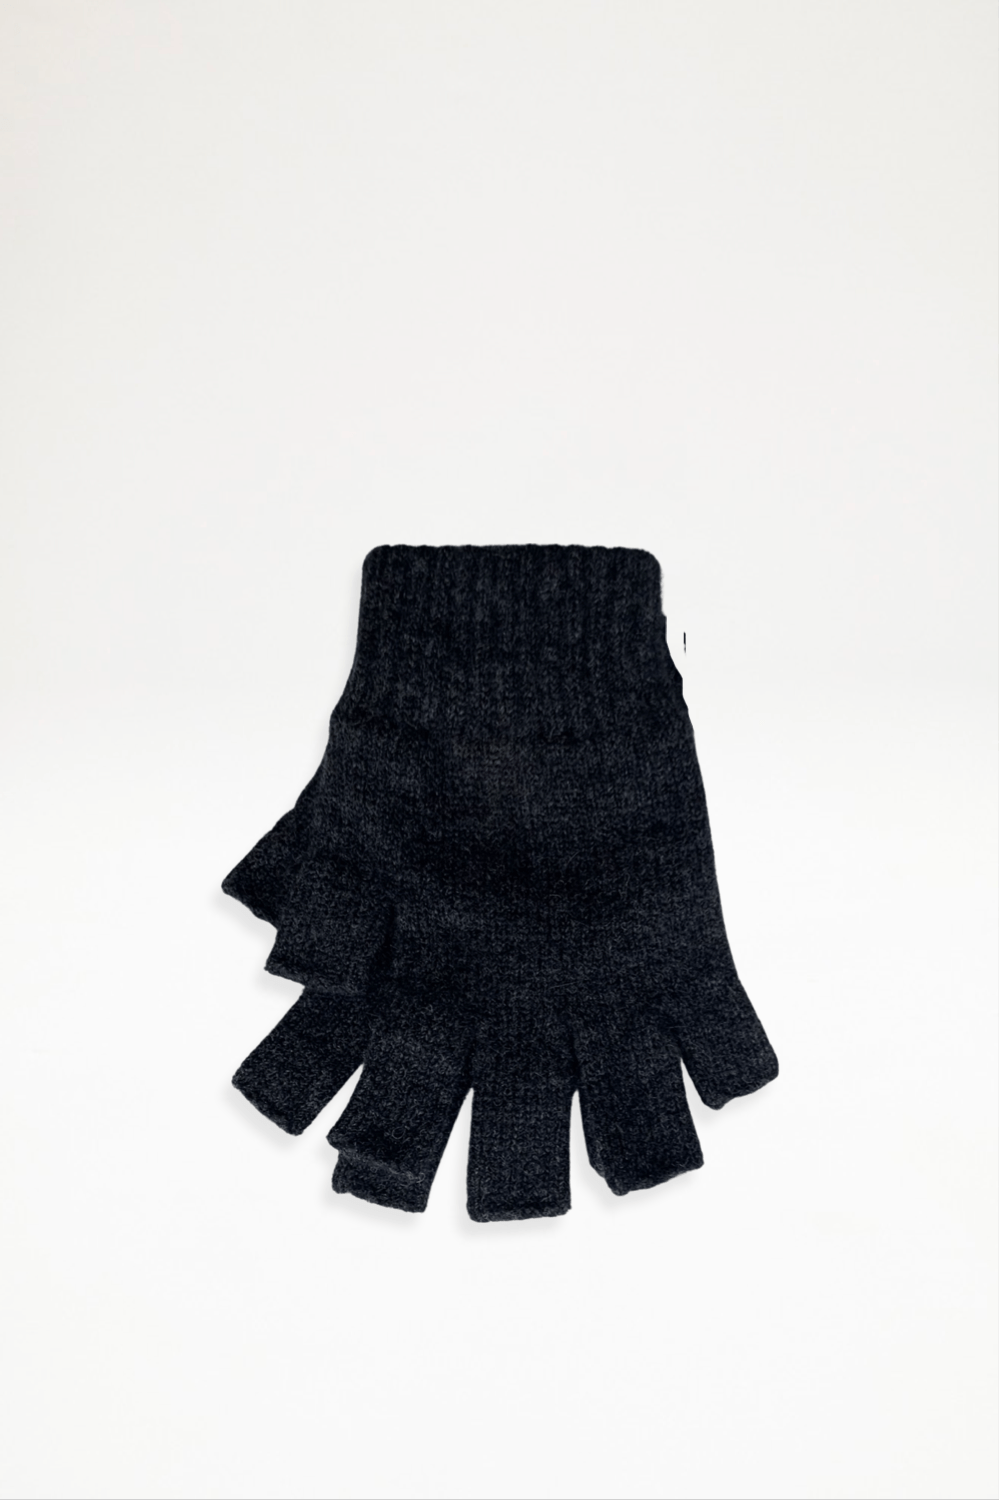 Possum Merino Open Finger Gloves - Charcoal - Ensemble Studios